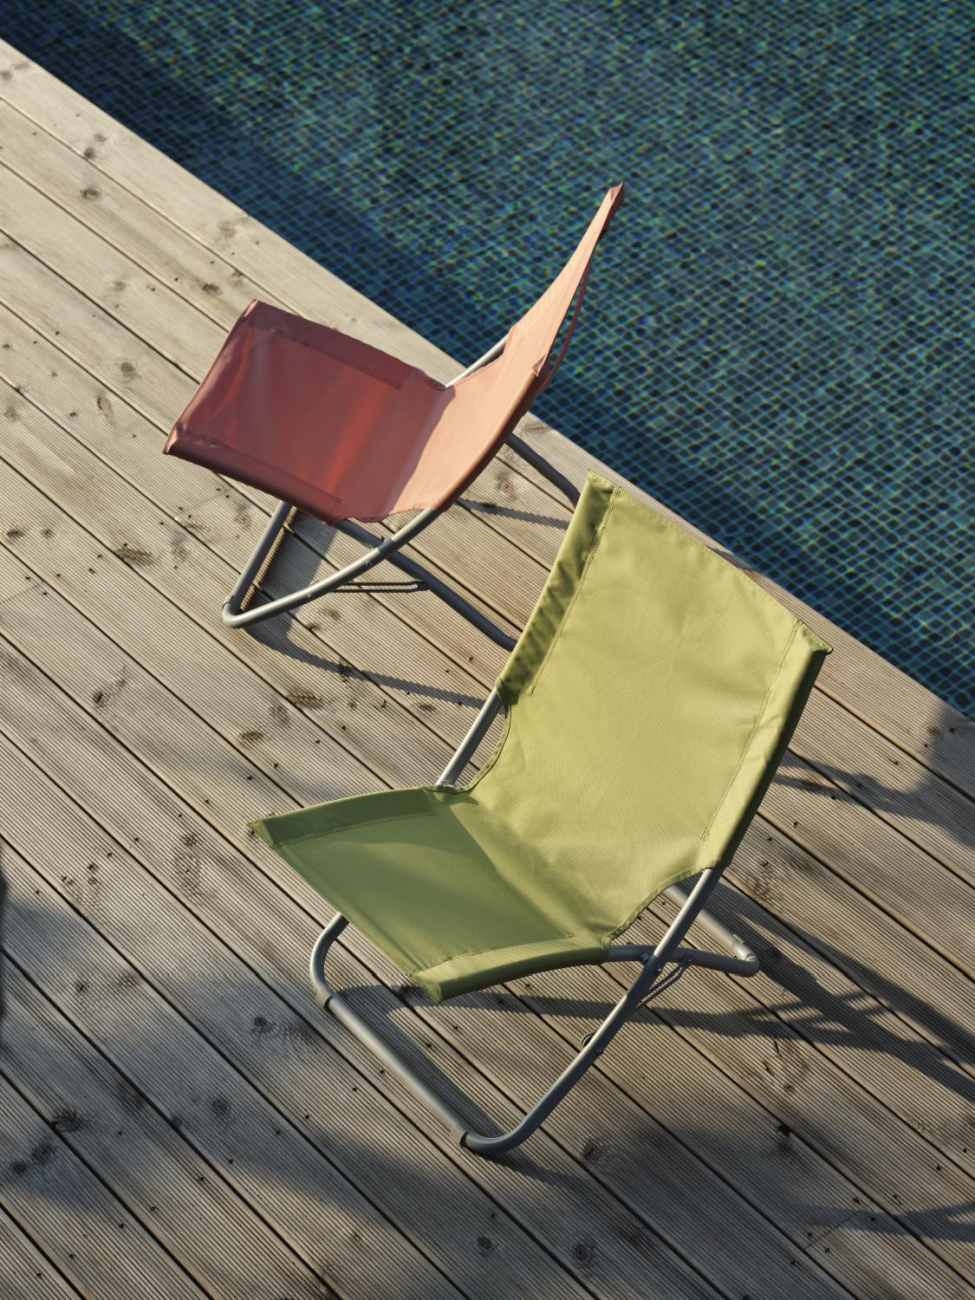 Der Strandstuhl Melodi überzeugt mit seinem modernen Design. Gefertigt wurde er aus Stoff, welcher einen grünen Farbton besitzt. Das Gestell ist aus Metall und hat eine silberne Farbe. Die Sitzhöhe des Stuhls beträgt 33 cm.